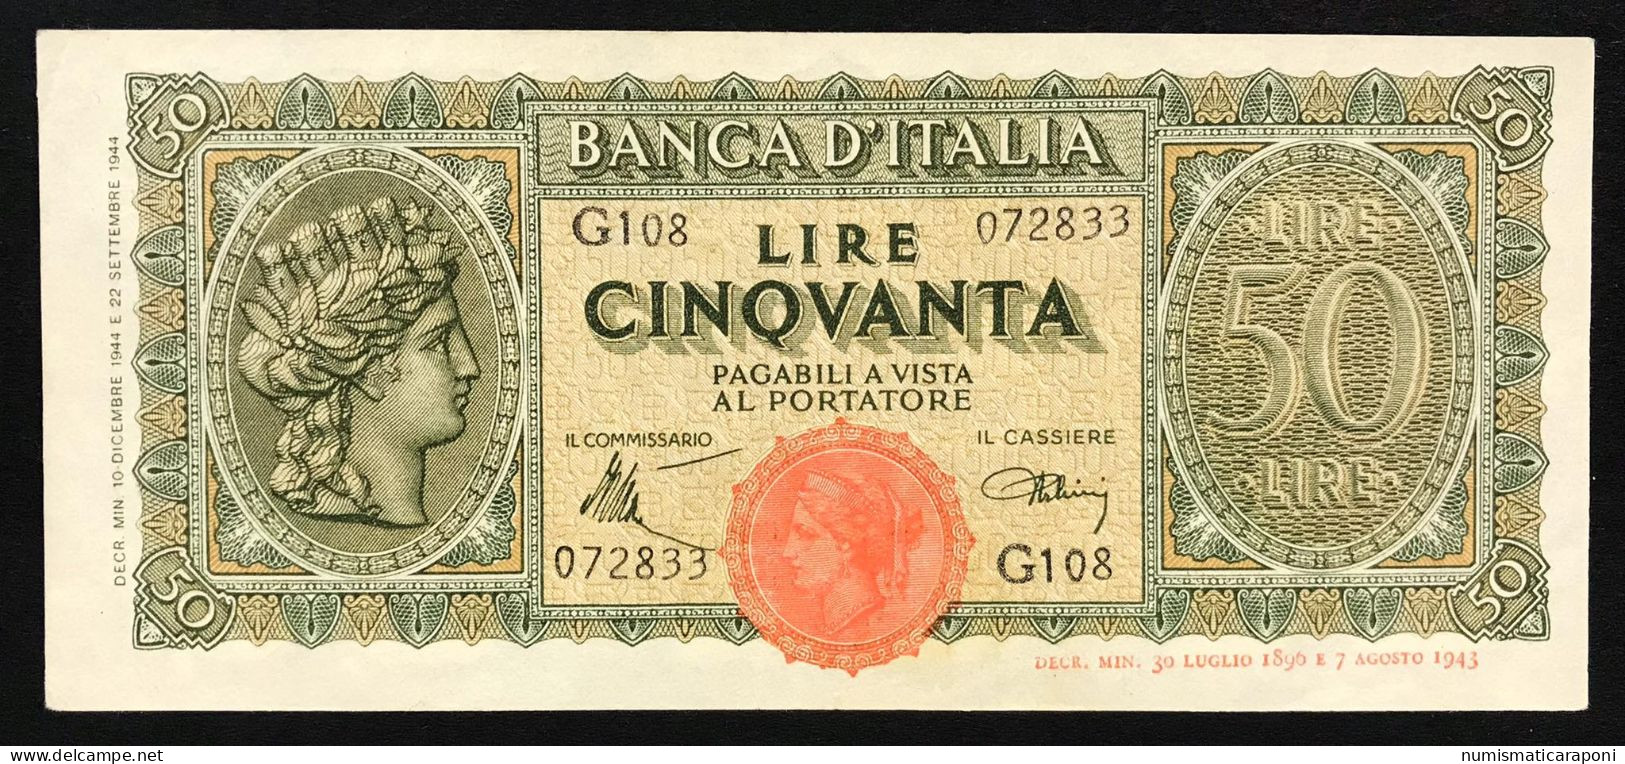 50 LIRE ITALIA TURRITA 10 12 1944  Spl OTTIMO BIGLIETTO  LOTTO 1693 - 50 Liras